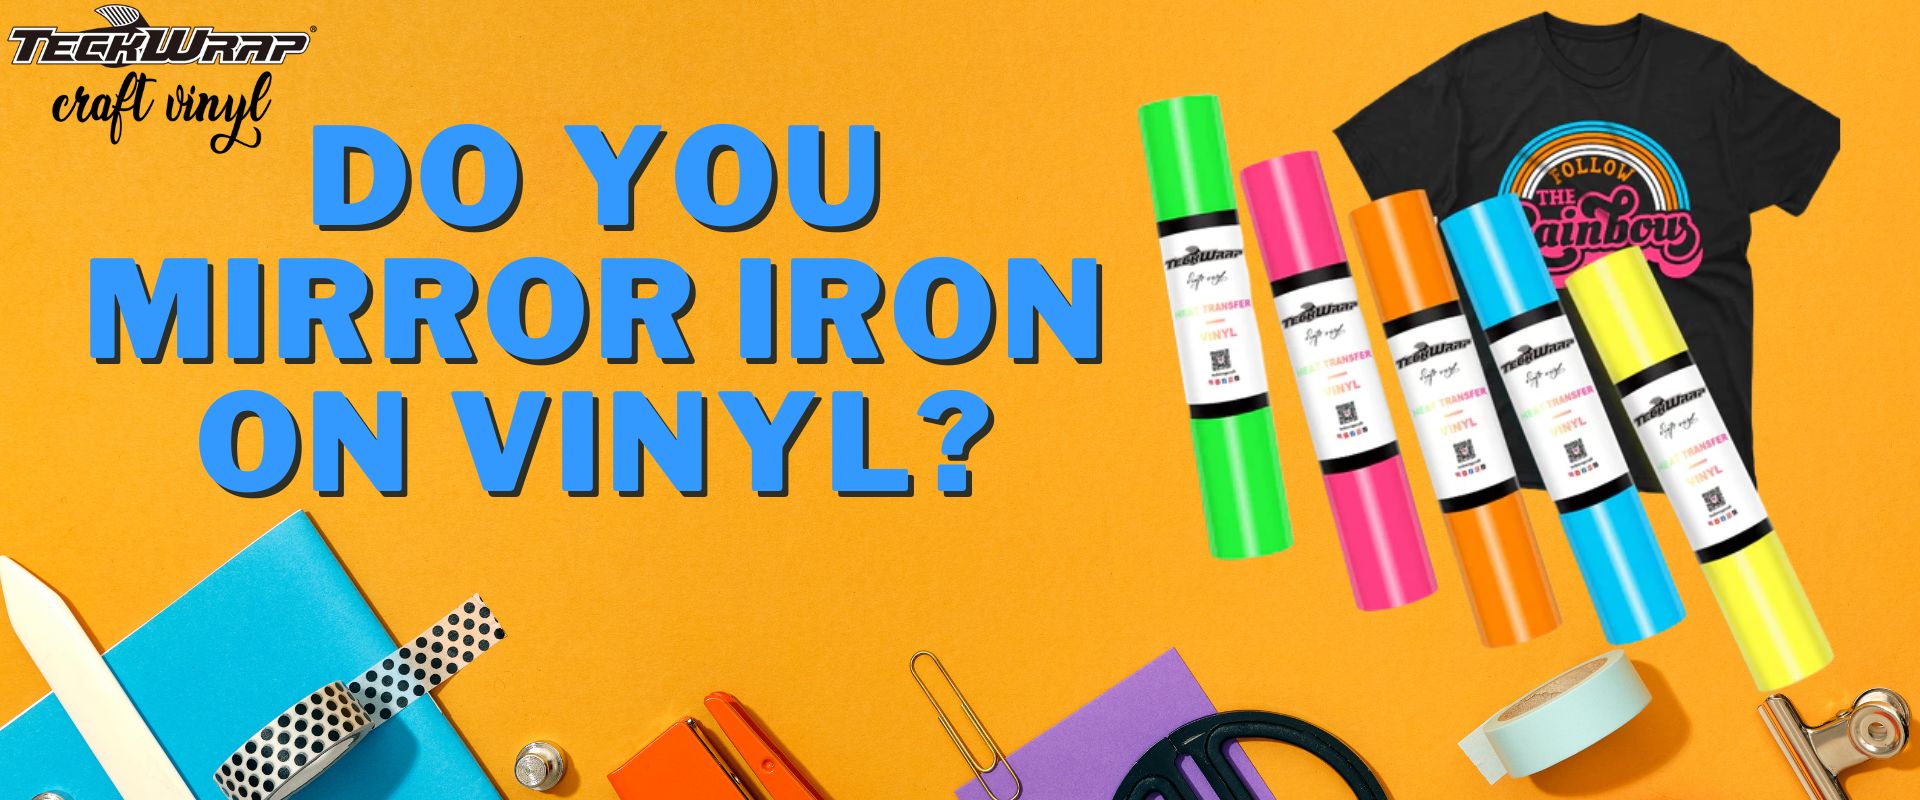 Do You Mirror Iron On Vinyl?